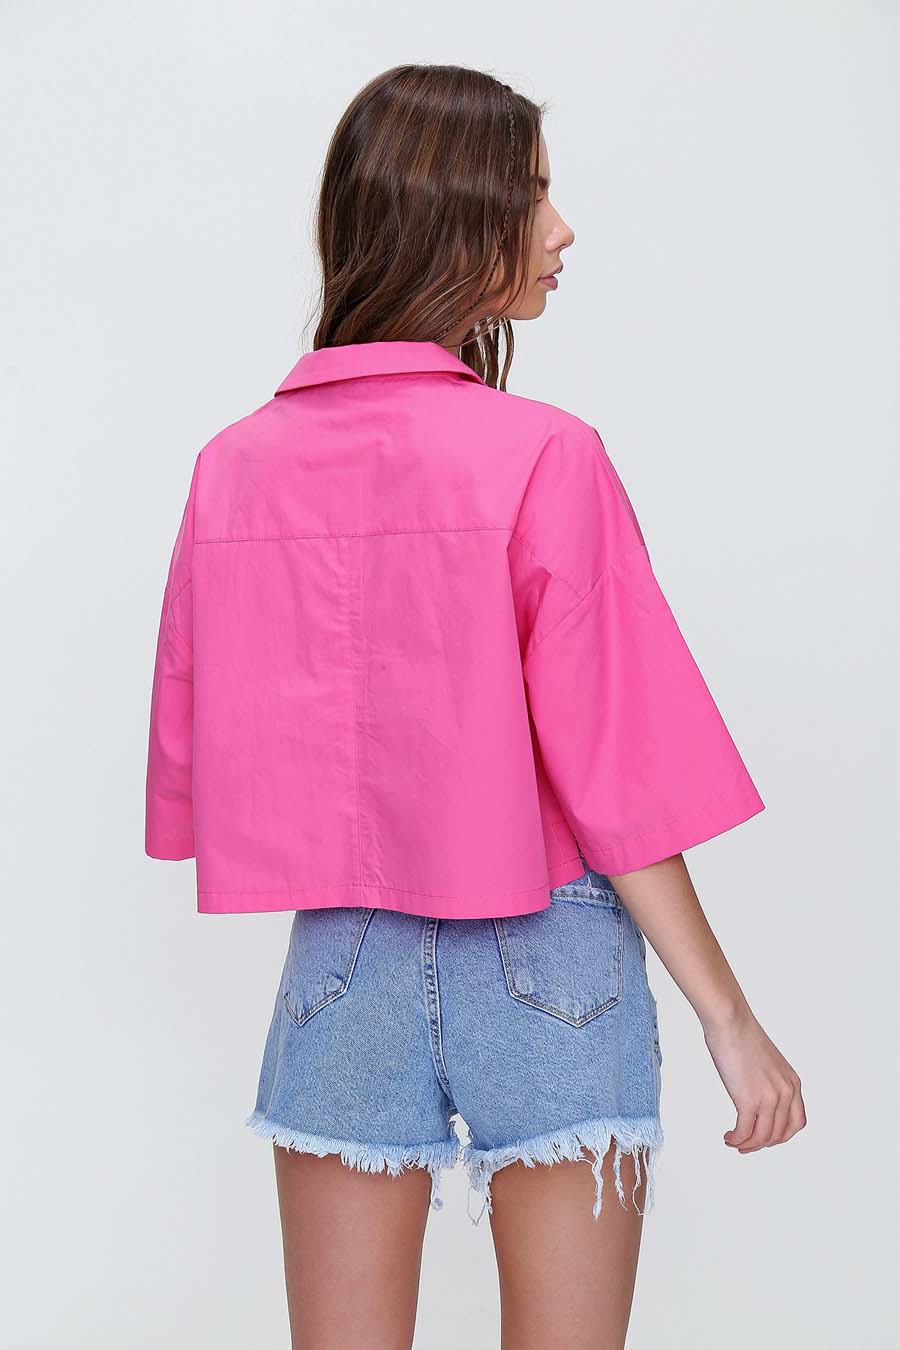 Γυναικείο πουκάμισο Indiana, Ροζ 4